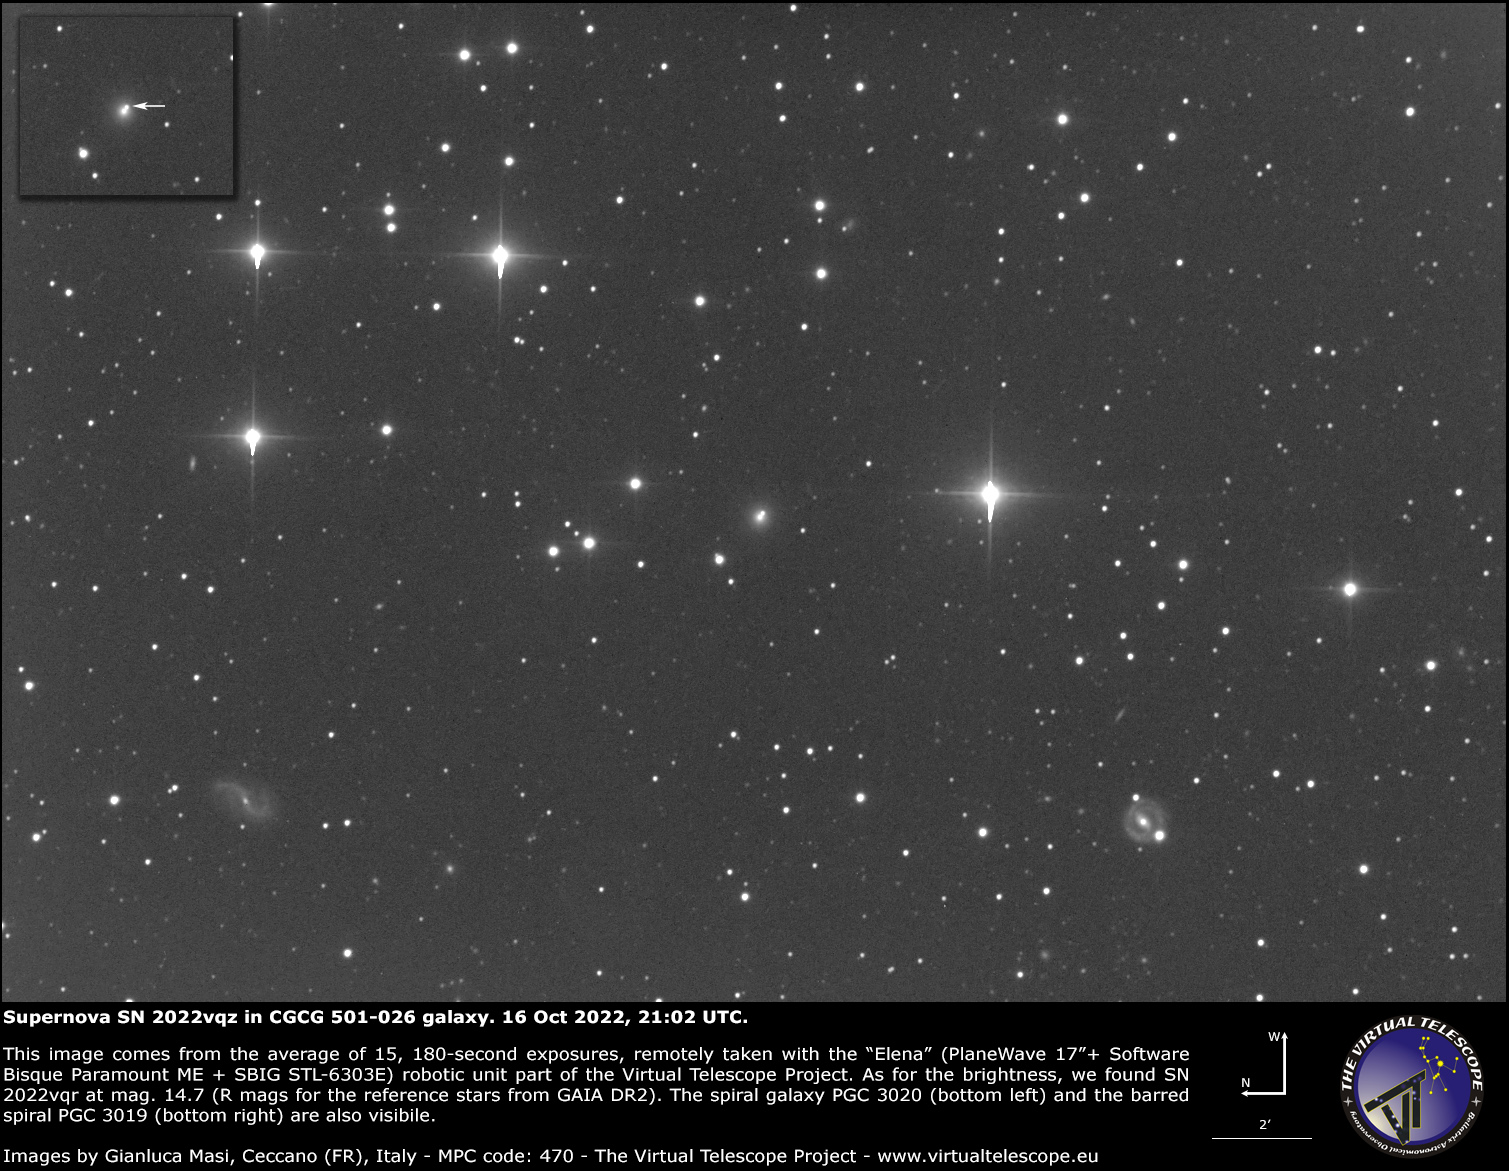 Supernova SN 2022vqz in CGCG 501-026 galaxy. 16 Oct 2022.